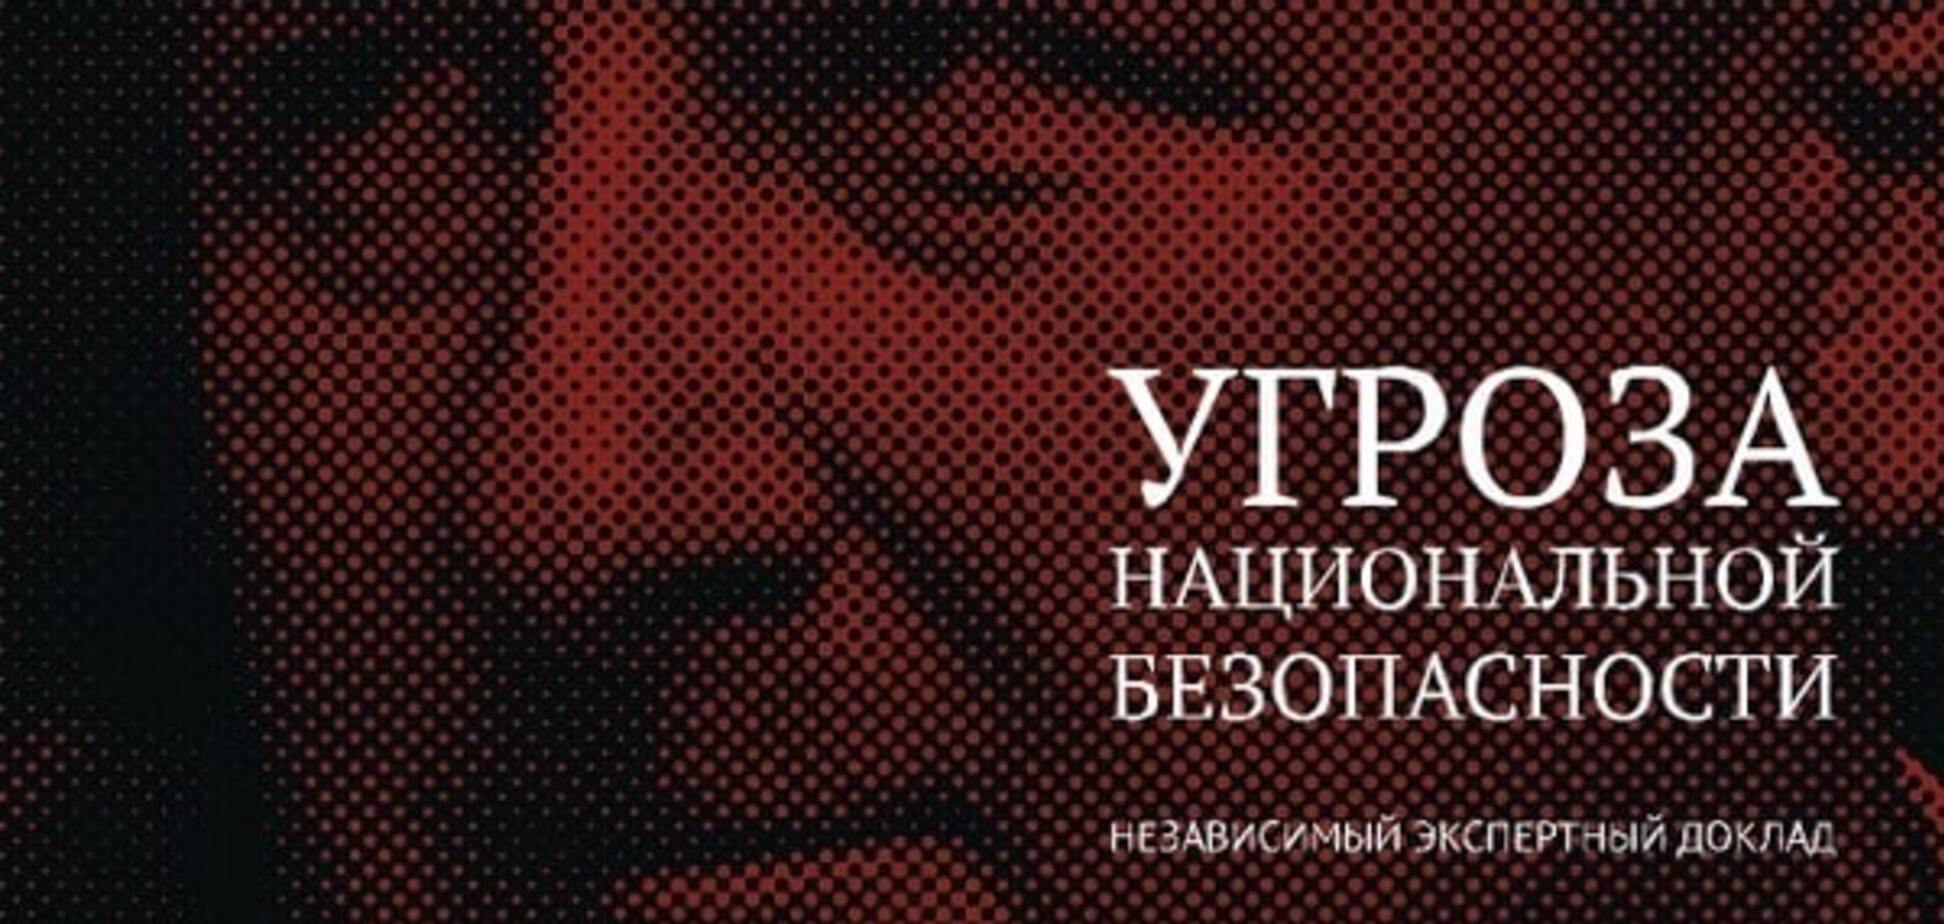 Угроза национальной безопасности: опубликован полный текст доклада Яшина о Кадырове. Документ